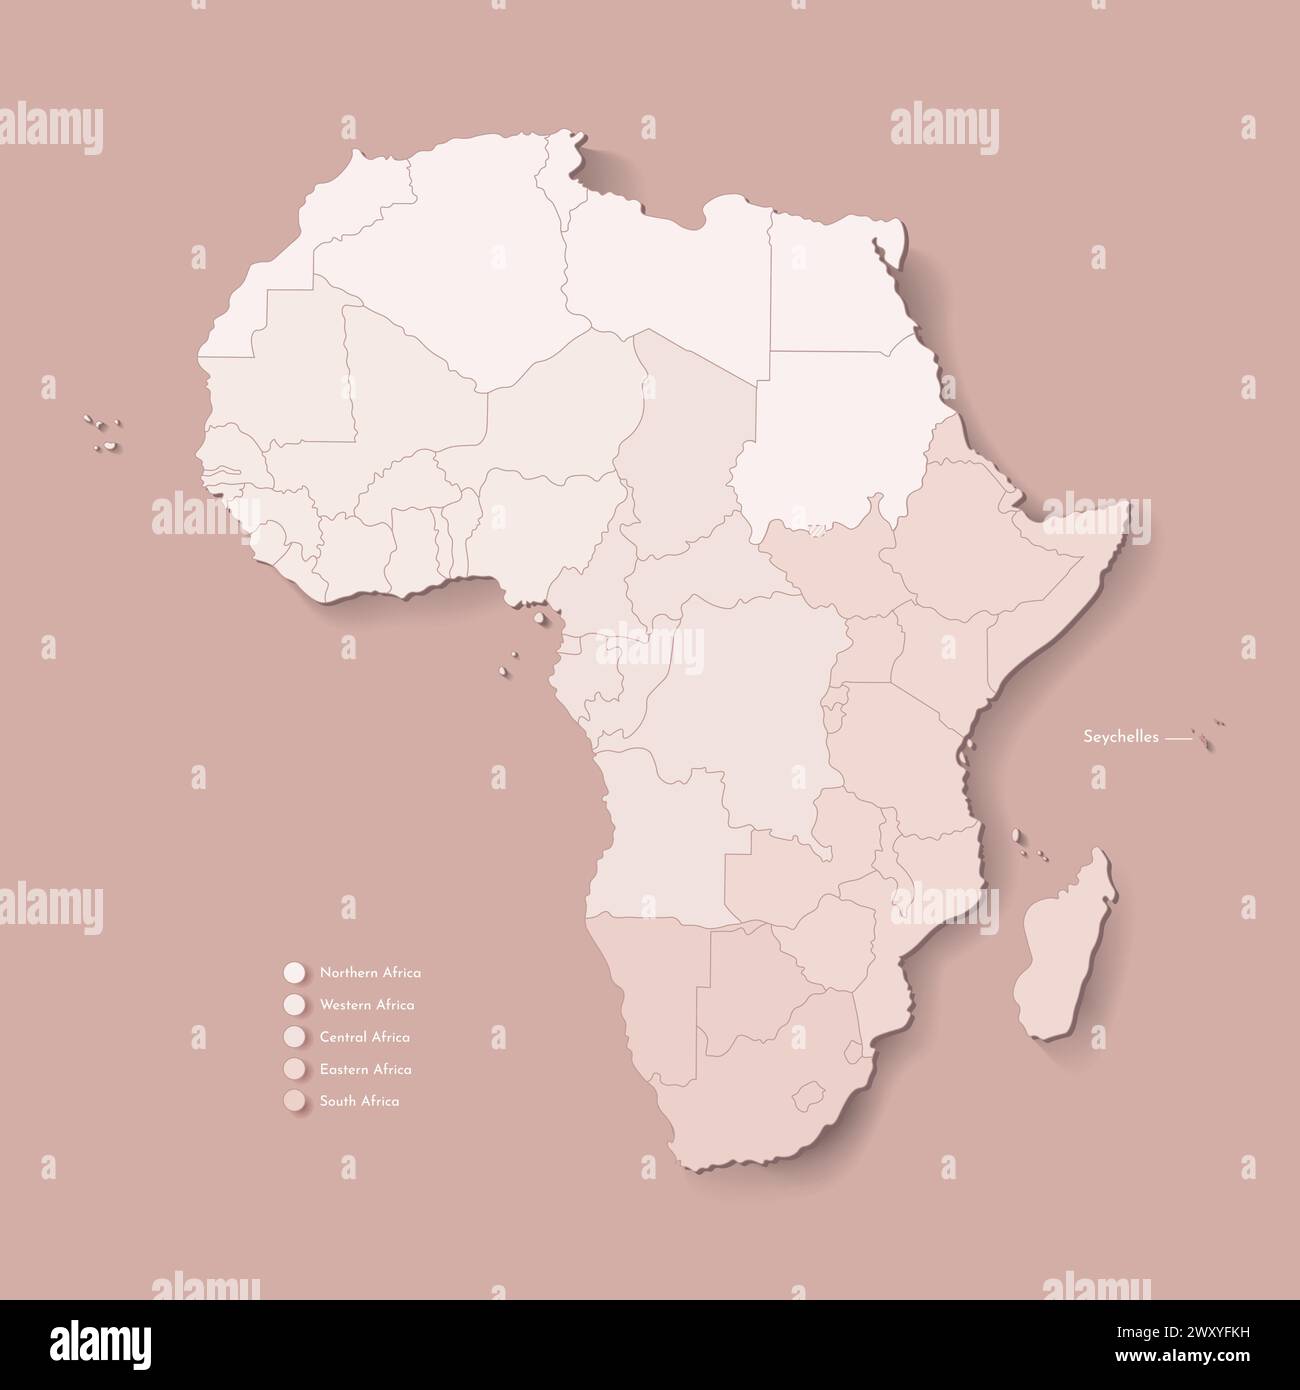 Illustrazione vettoriale con continente africano con confini di tutti gli stati e paese marcato Seychelles. Mappa politica di colore marrone con occidentale, sud Illustrazione Vettoriale